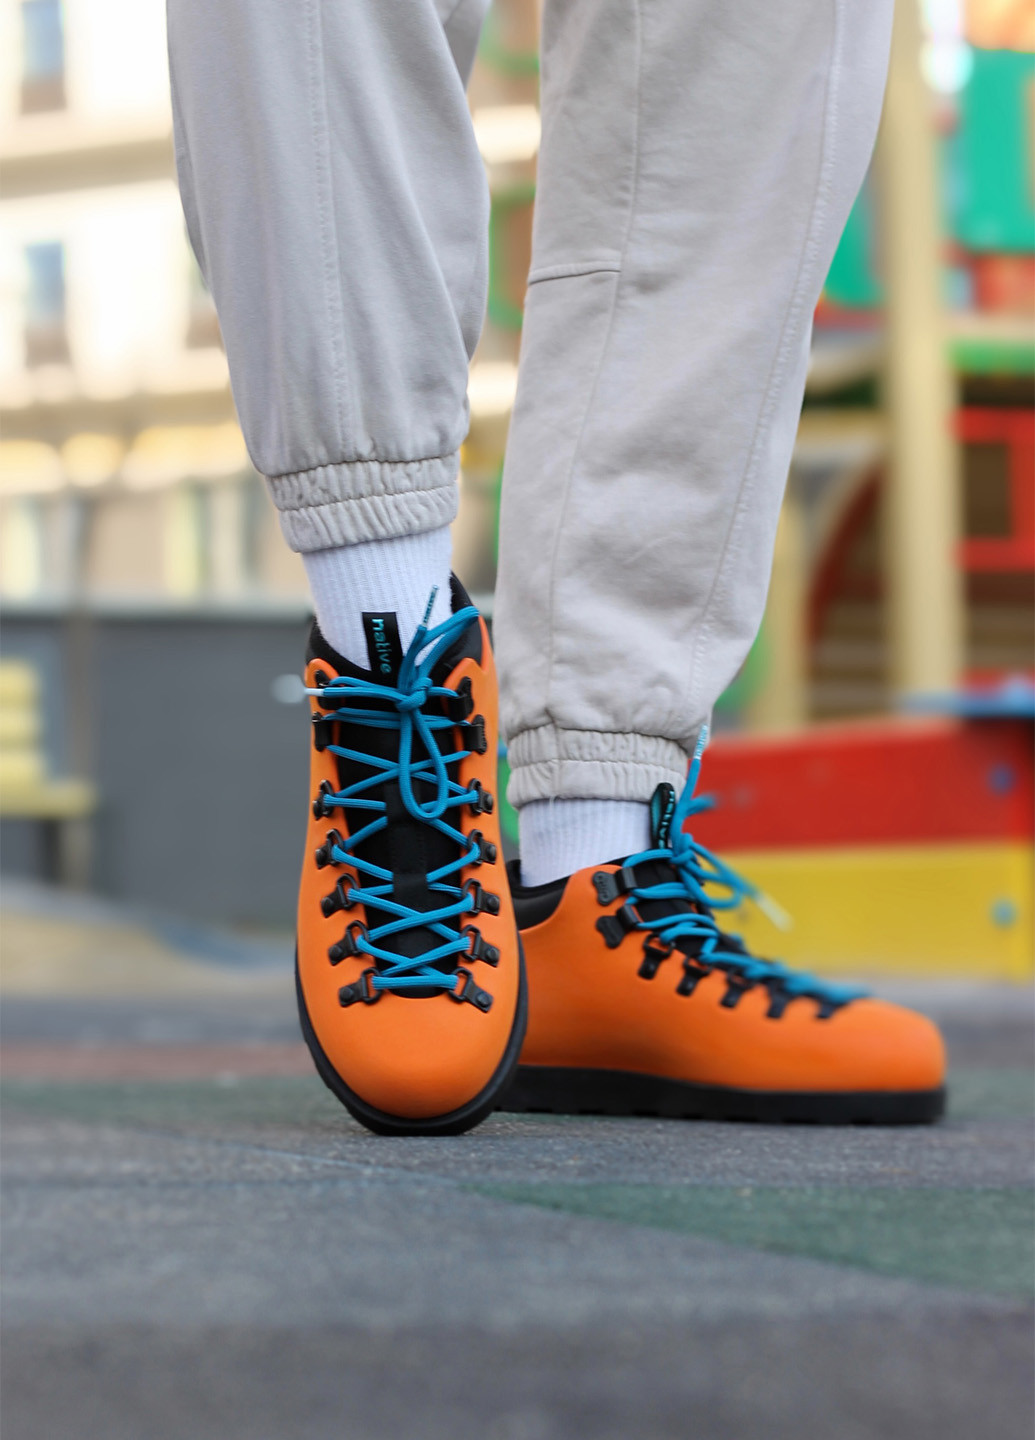 Оранжевые зимние ботинки Native